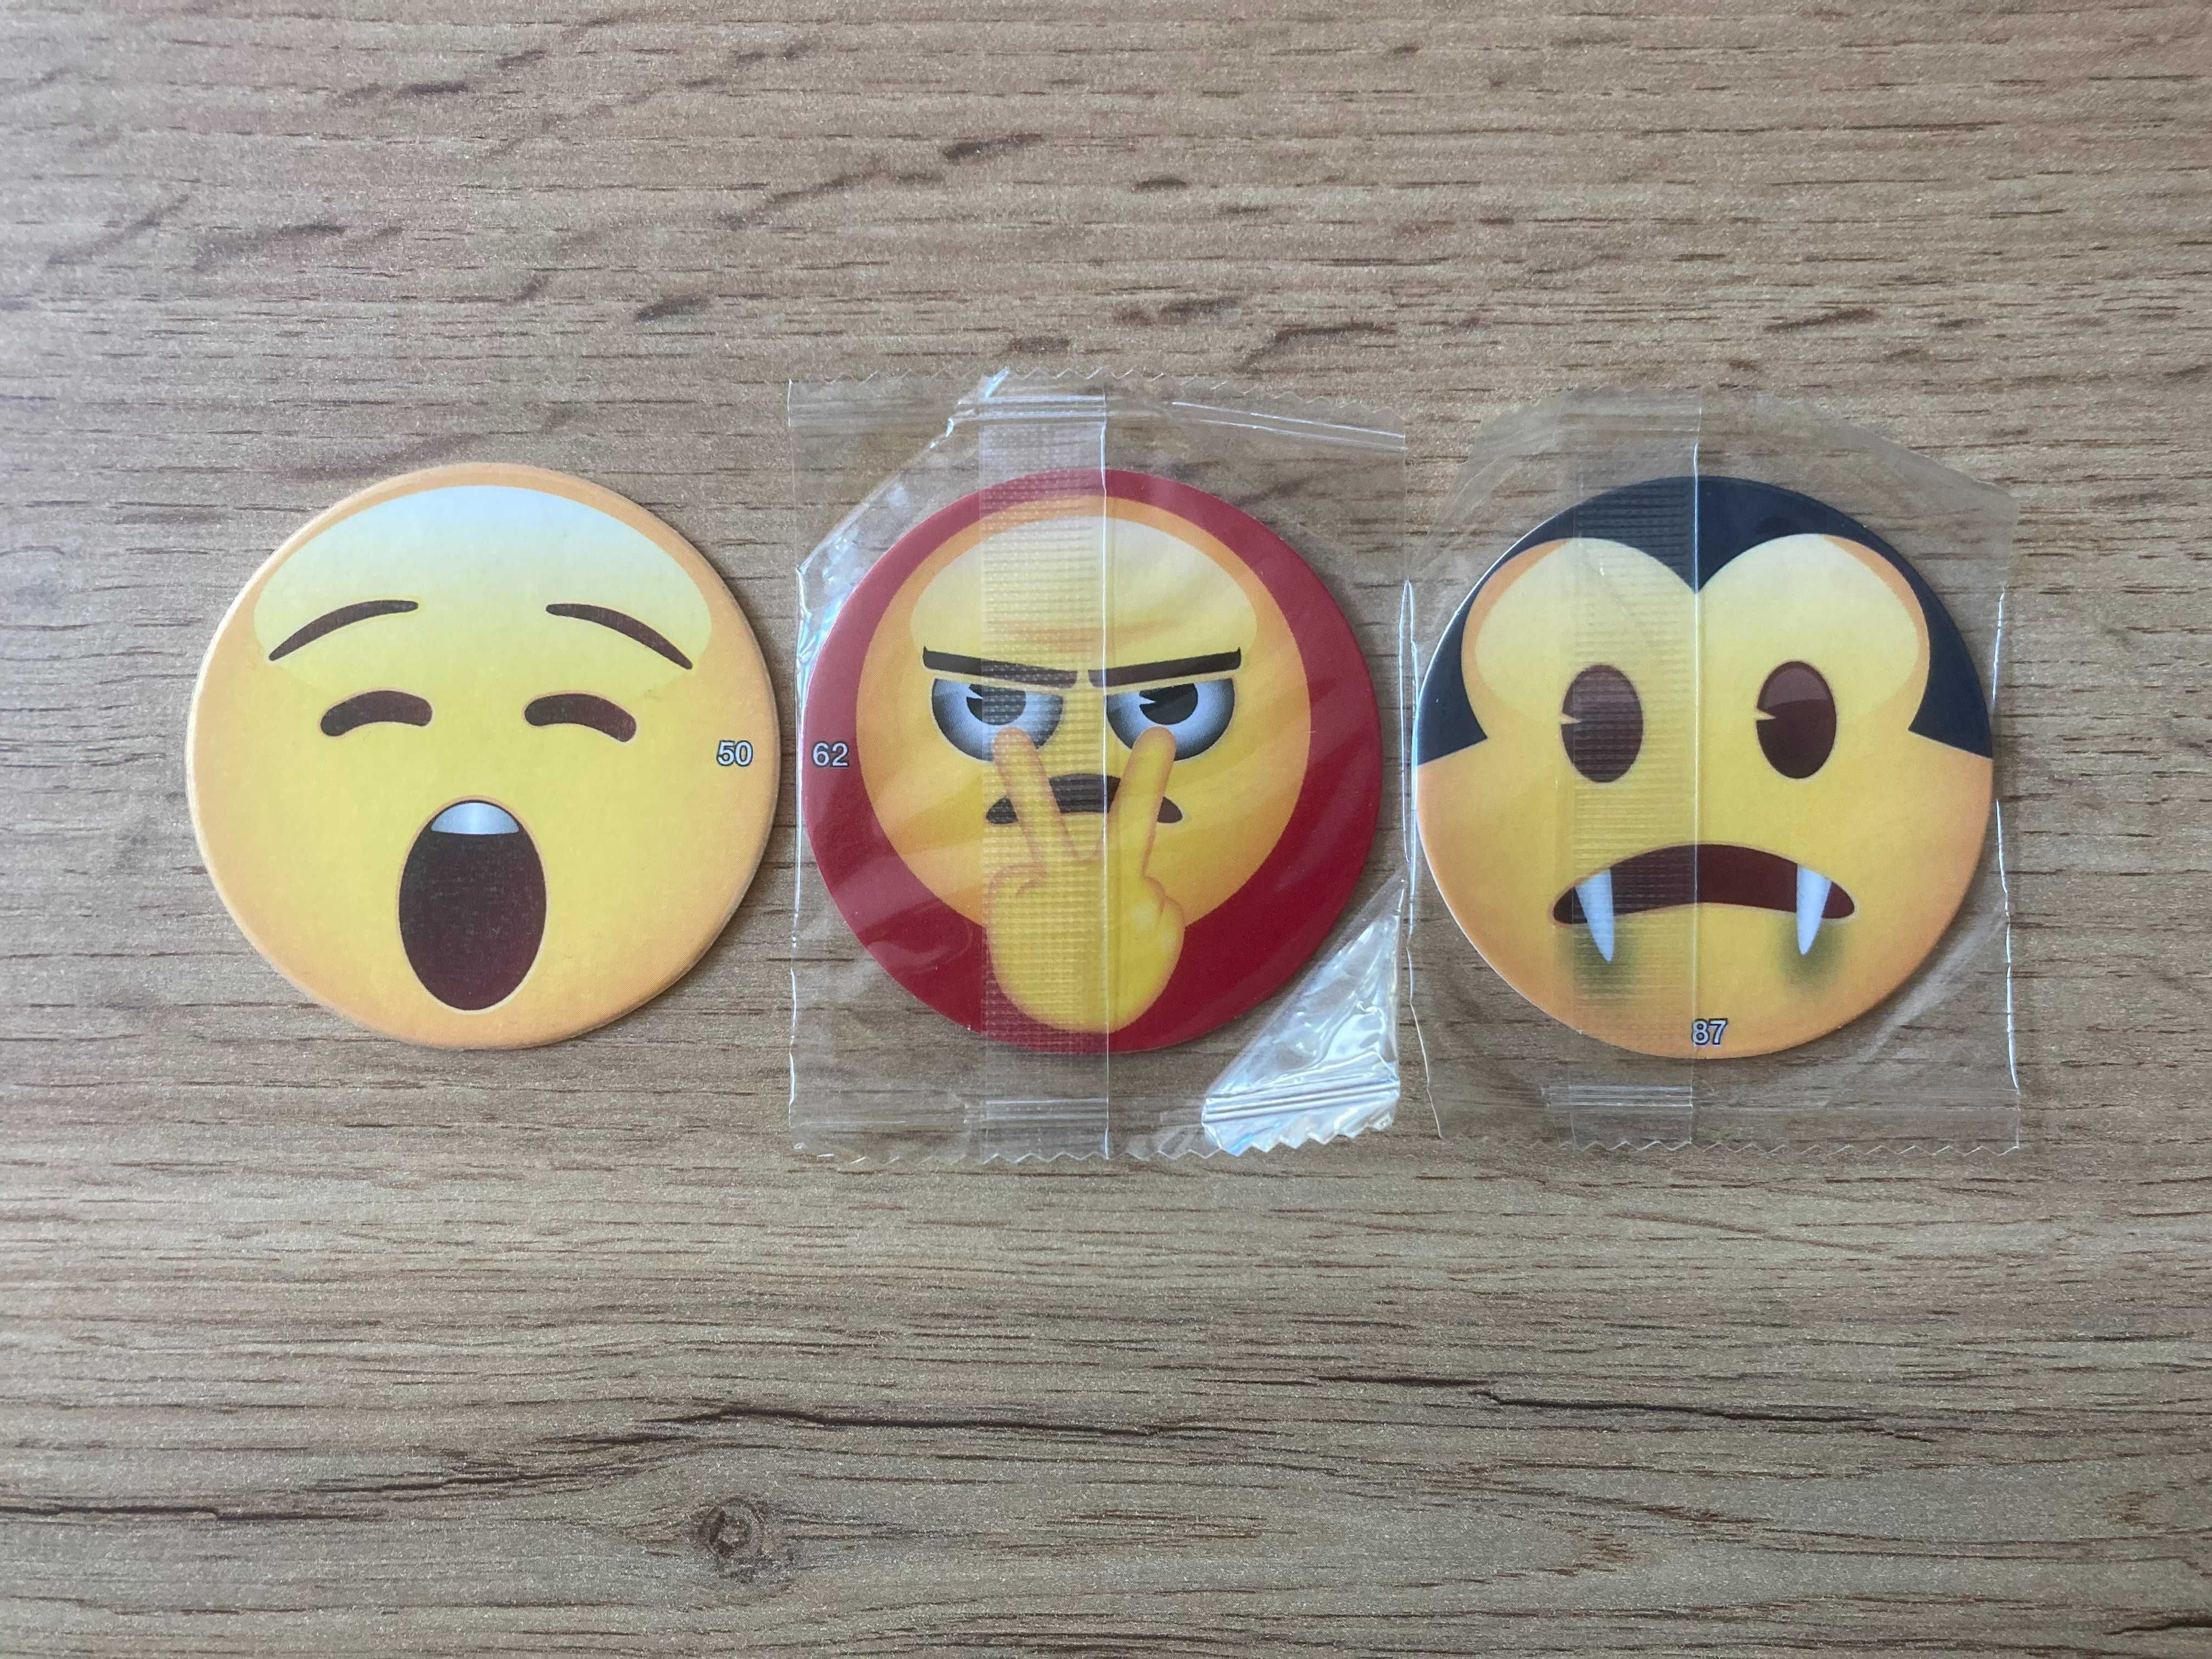 Chipicao / tazo / żetony / kapsle z serii Emoji